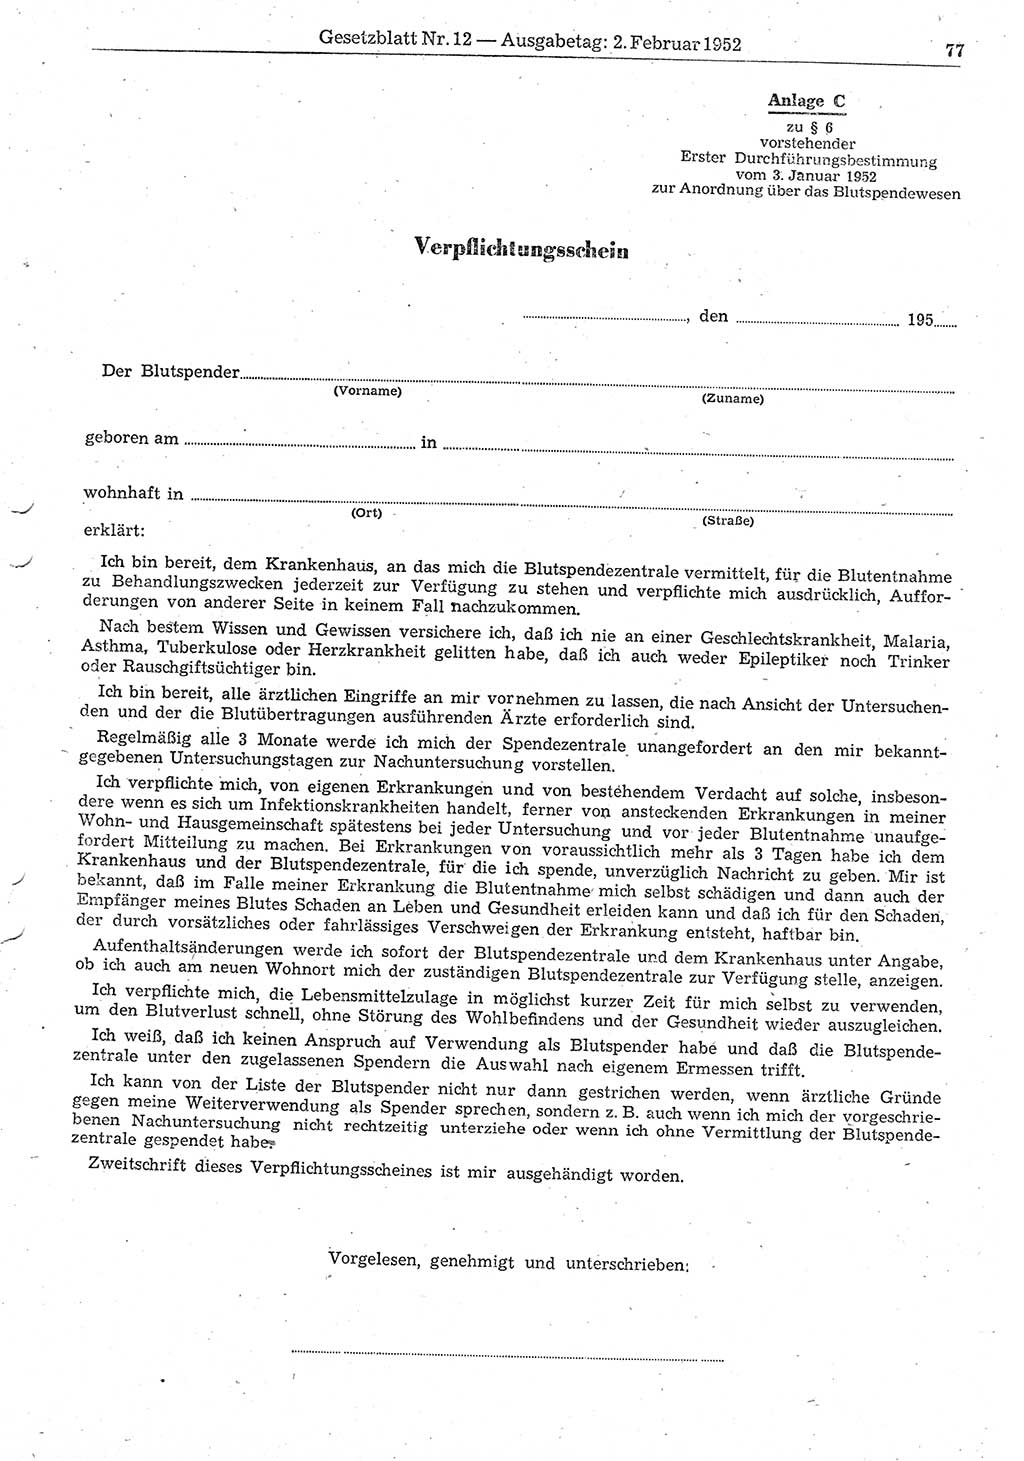 Gesetzblatt (GBl.) der Deutschen Demokratischen Republik (DDR) 1952, Seite 77 (GBl. DDR 1952, S. 77)